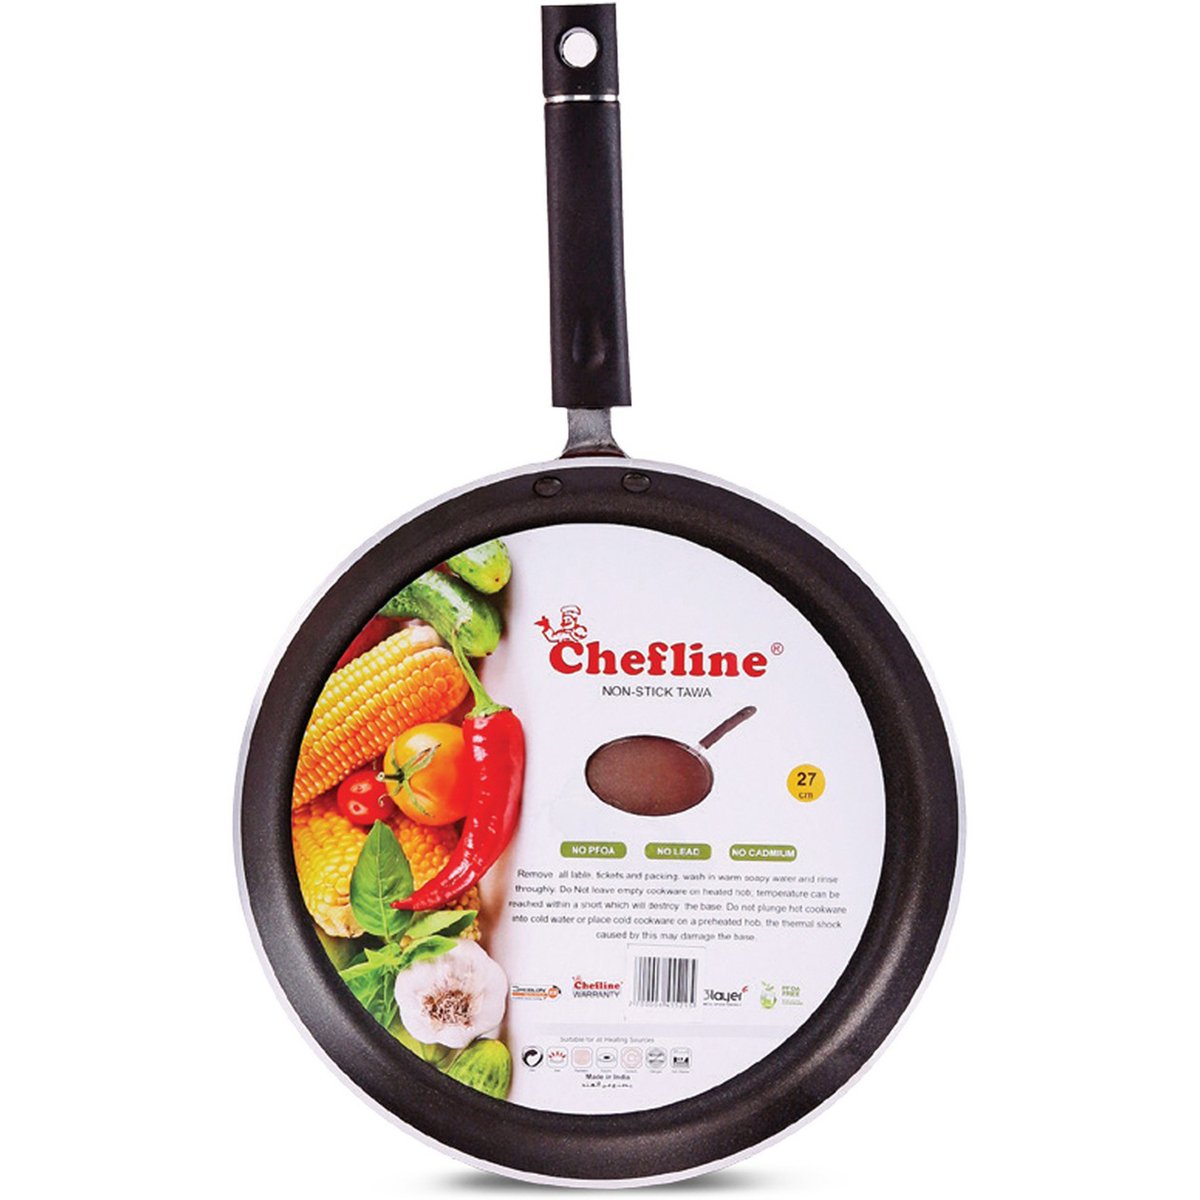 Chefline Non-Stick Tawa 27cm